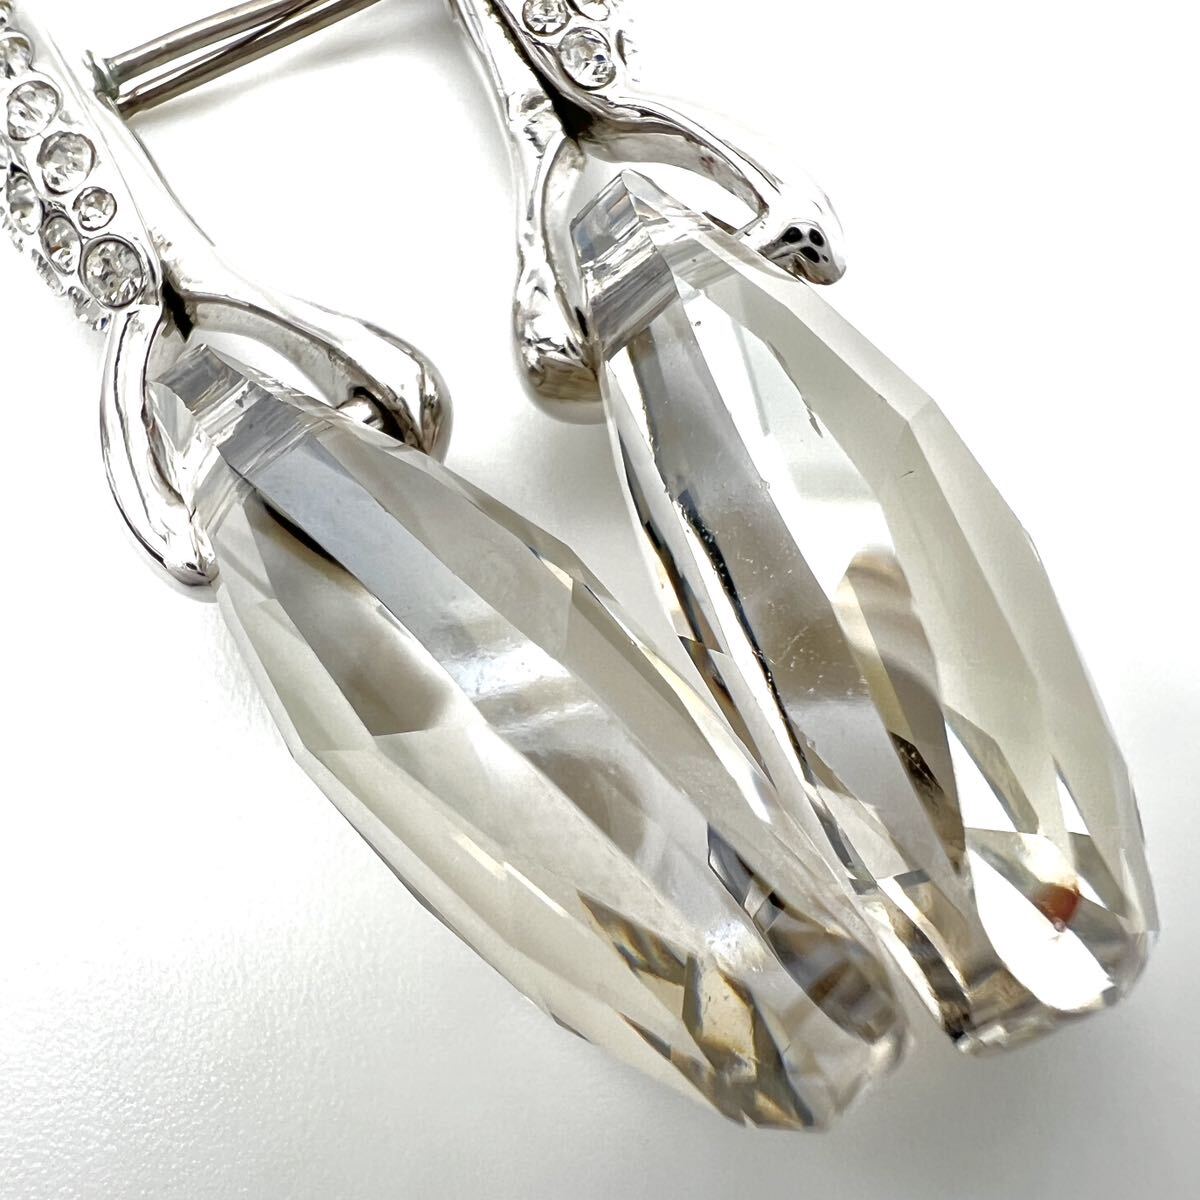 SWAROVSKIl Swarovski серьги [ Acty ] Drop серебряный цвет стразы crystal стекло серьги-гвоздики бренд a501et